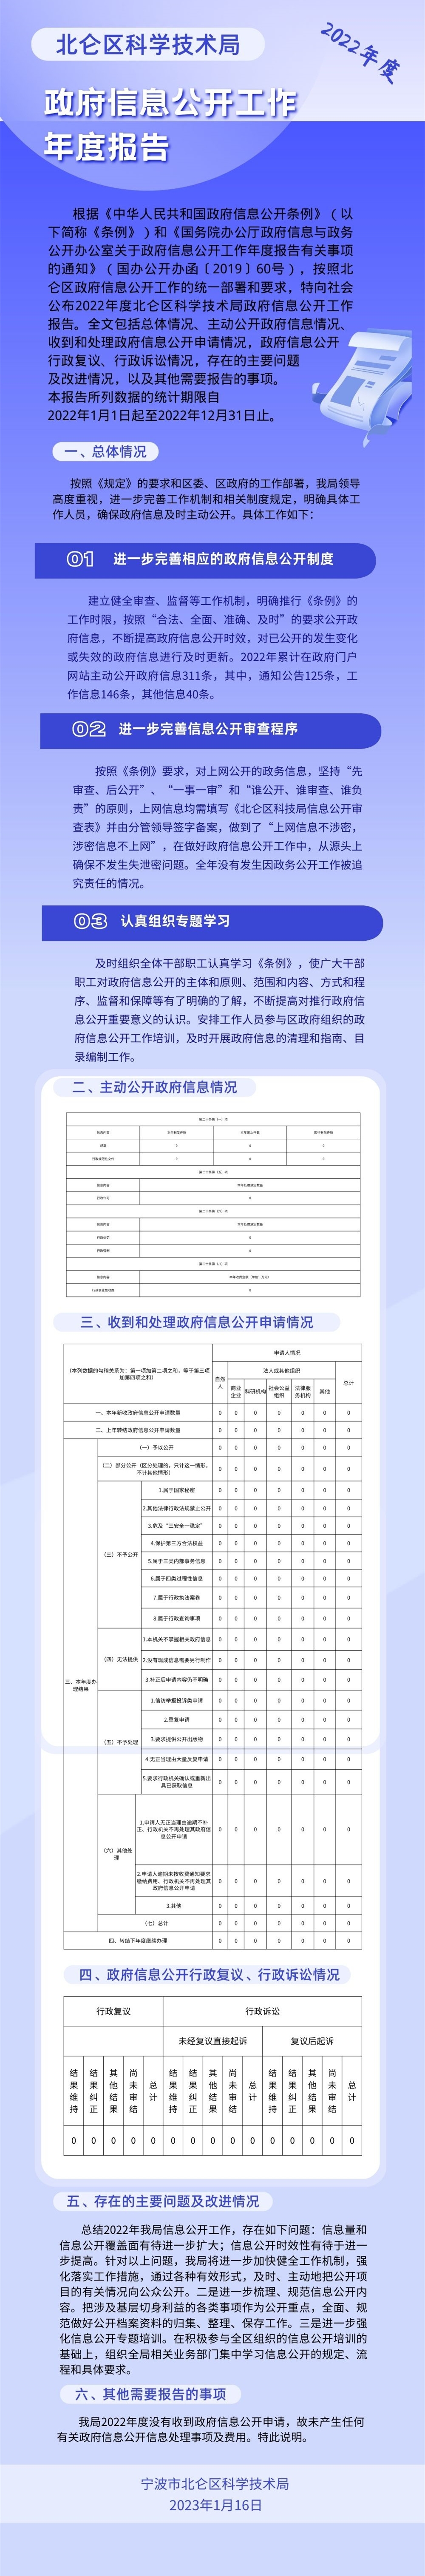 蓝紫白色渐变插画资讯矢量新媒体分享中文信息图表.jpg